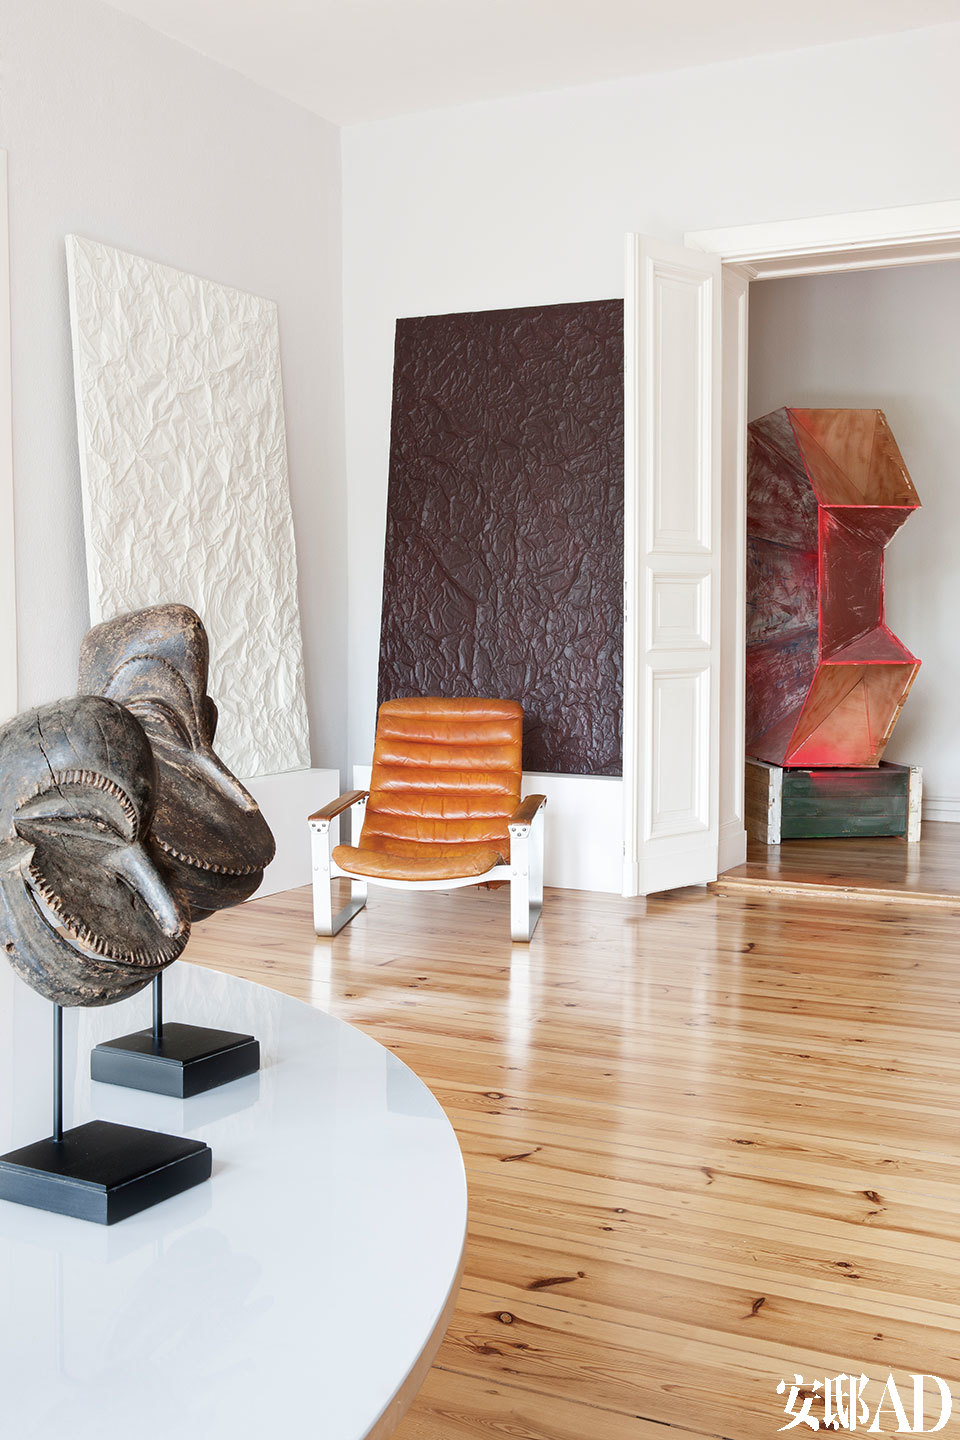 “ 在我的家里，每个房间都是一个简单的白色立方体， 它们相连在一起，就仿佛一座特别的个人收藏馆。”靠墙的一黑一白两幅画作名为《And，Une》，出自Guillaume Leblon之手，一旁的金属架皮革扶手椅由Ilmari Lappalainen设计，近处的桌面上摆设着几只非洲部落风的头像雕塑，来自瑞士年轻艺术家Flurin Bisig。